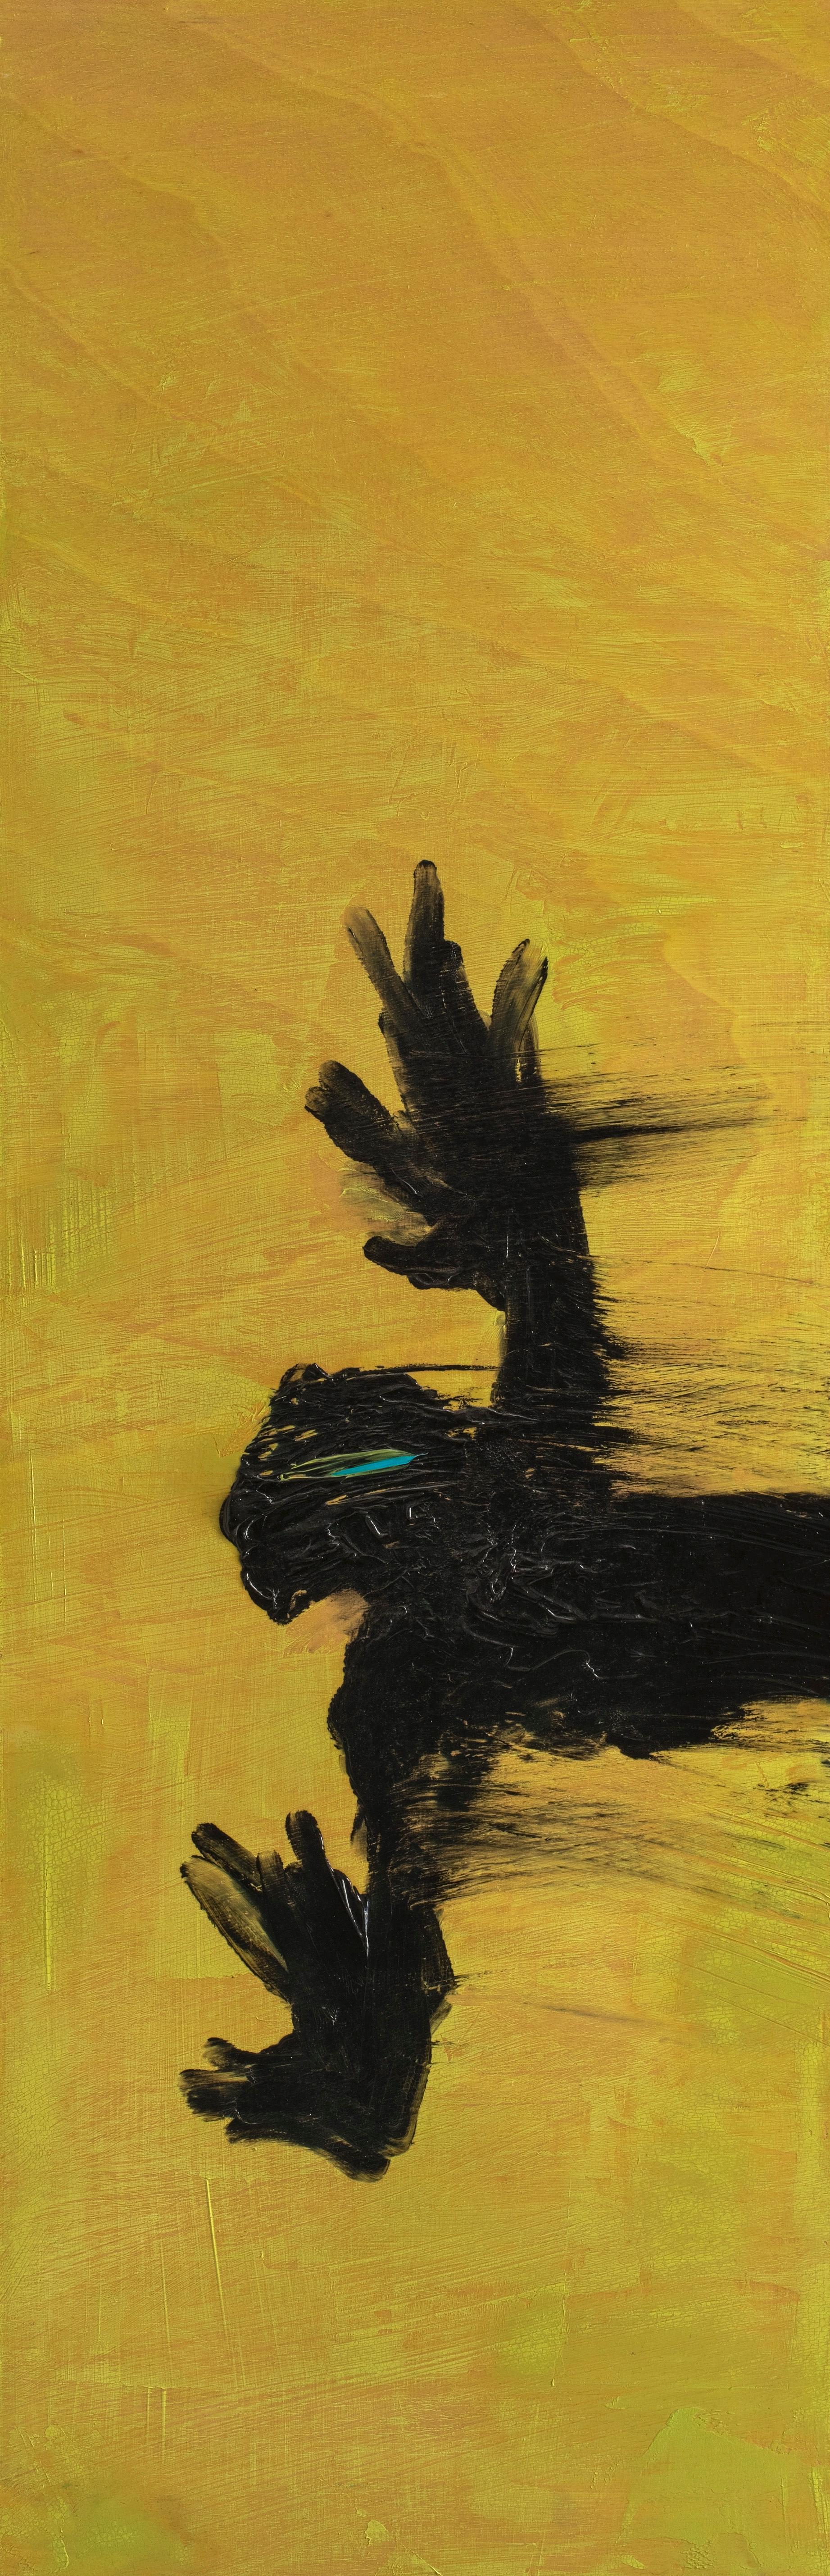 Peinture britannique du 21e siècle Flight Nicolas Kennett représentant un personnage de vol, jaune et noir